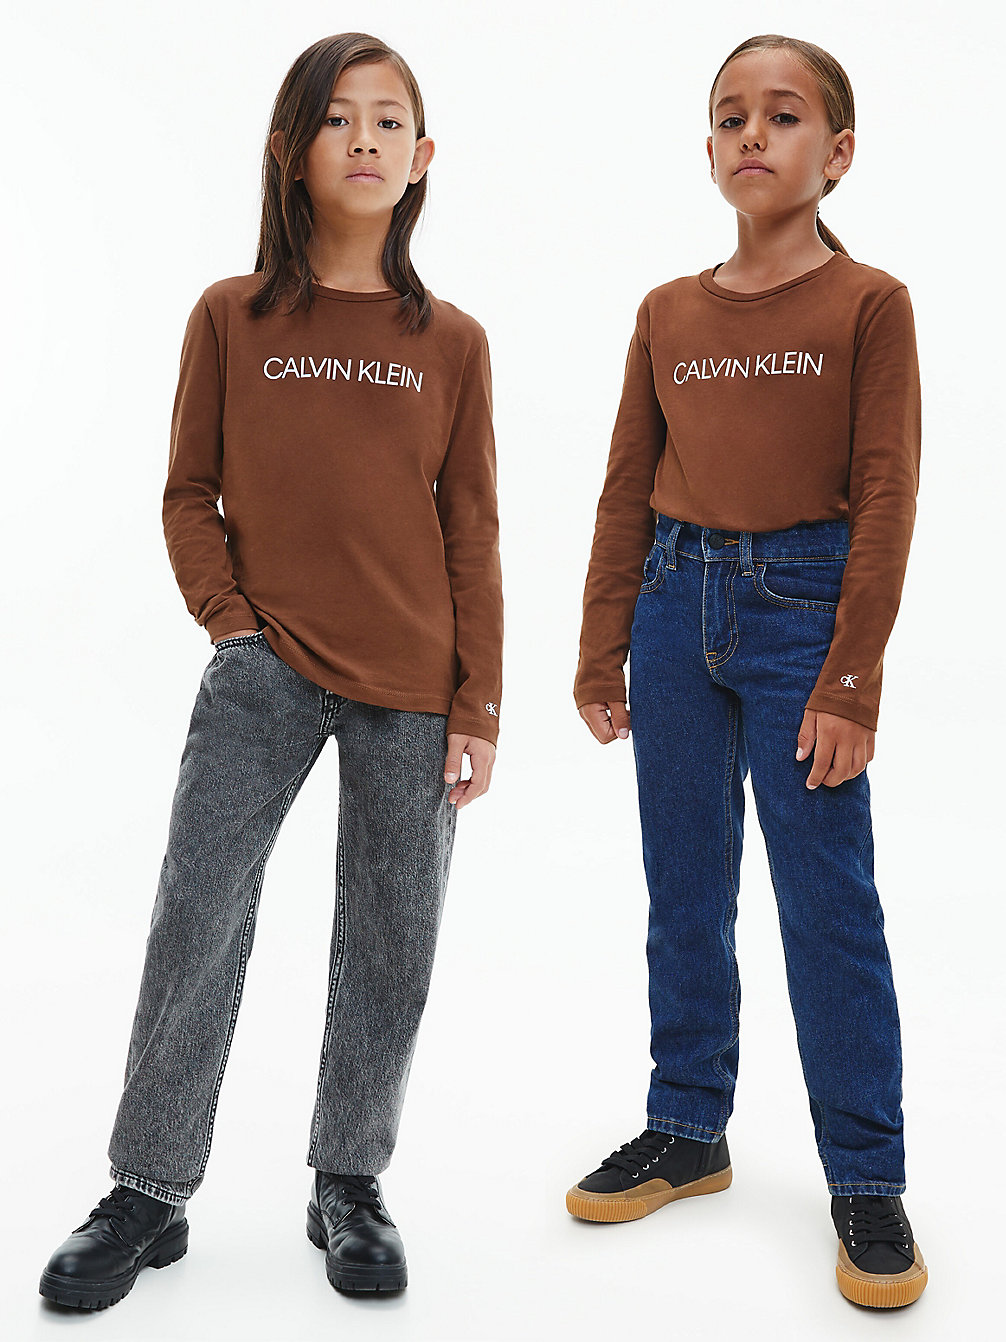 MILK CHOCOLATE Unisex-Langarmshirt undefined kids unisex Calvin Klein